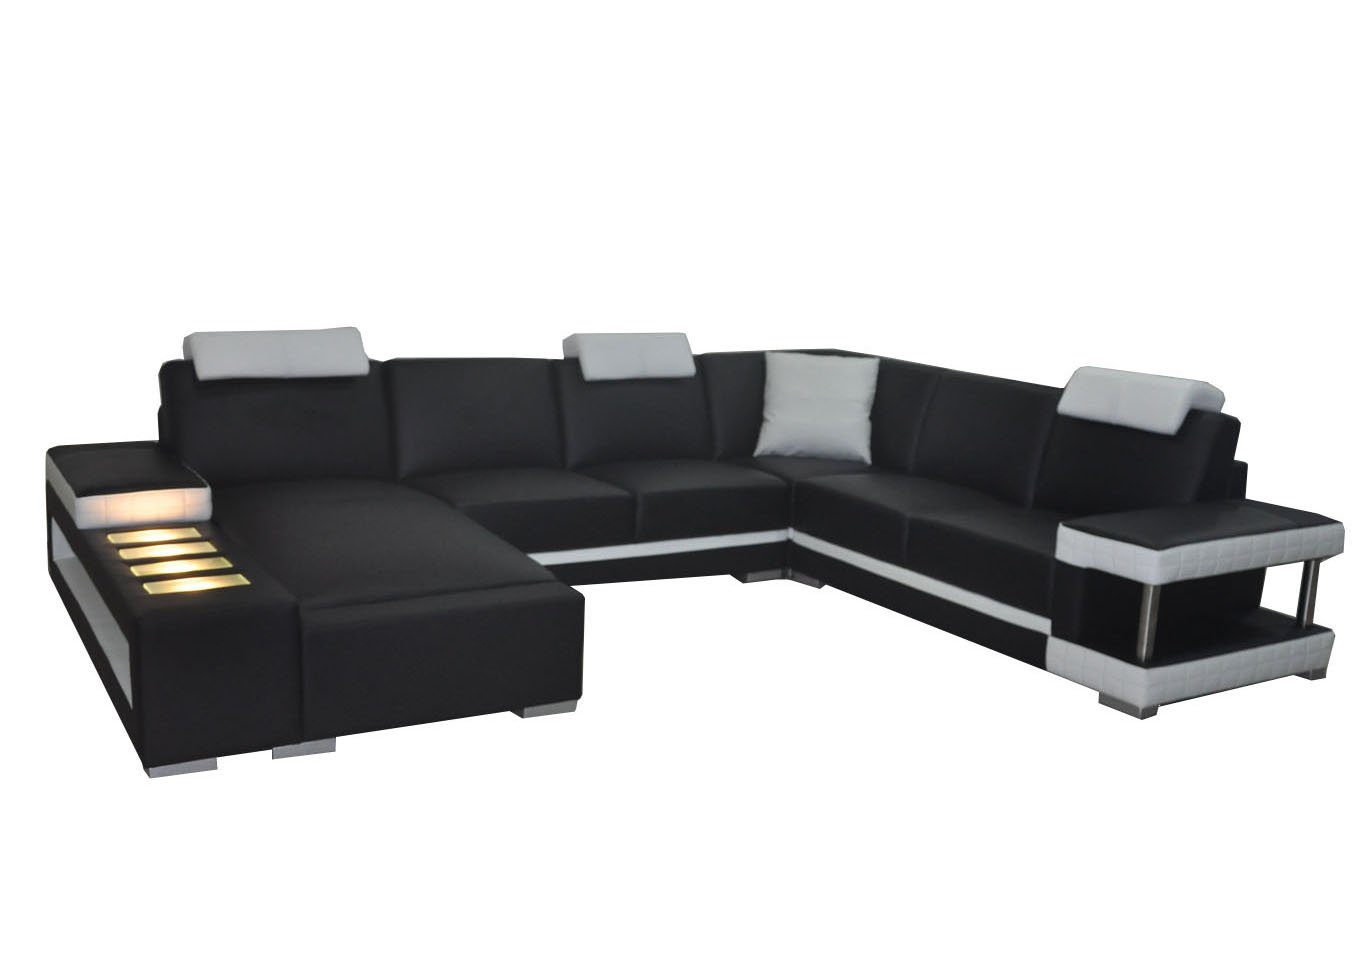 JVmoebel Ecksofa Designer Made Couch Europe Modern in Neu, Premium schwarz Ecksofa Eck xxl